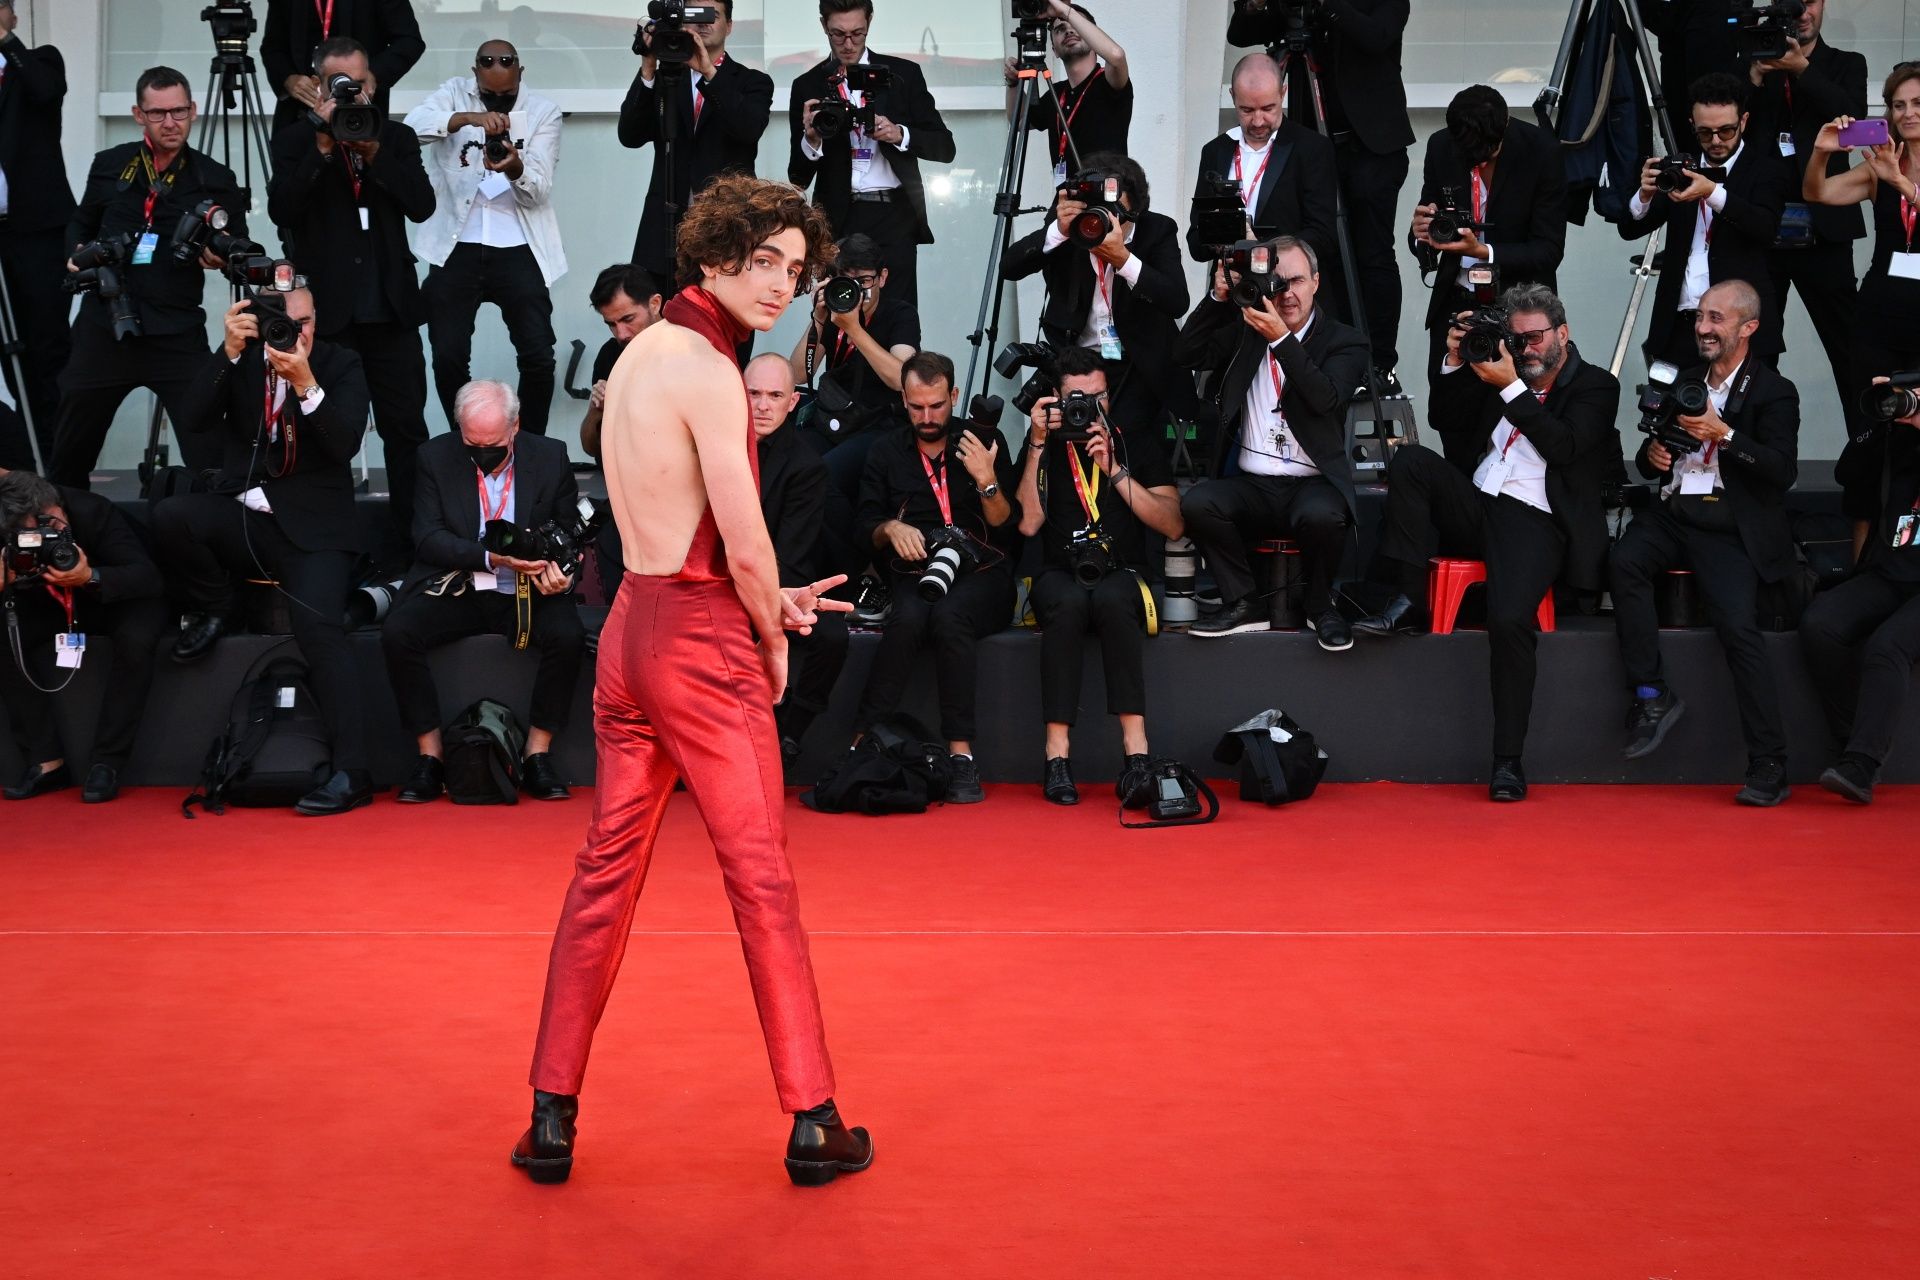 Timothée Chalamet Wearing a 'Bolong' Dress at the 2022 Venice Film Festival